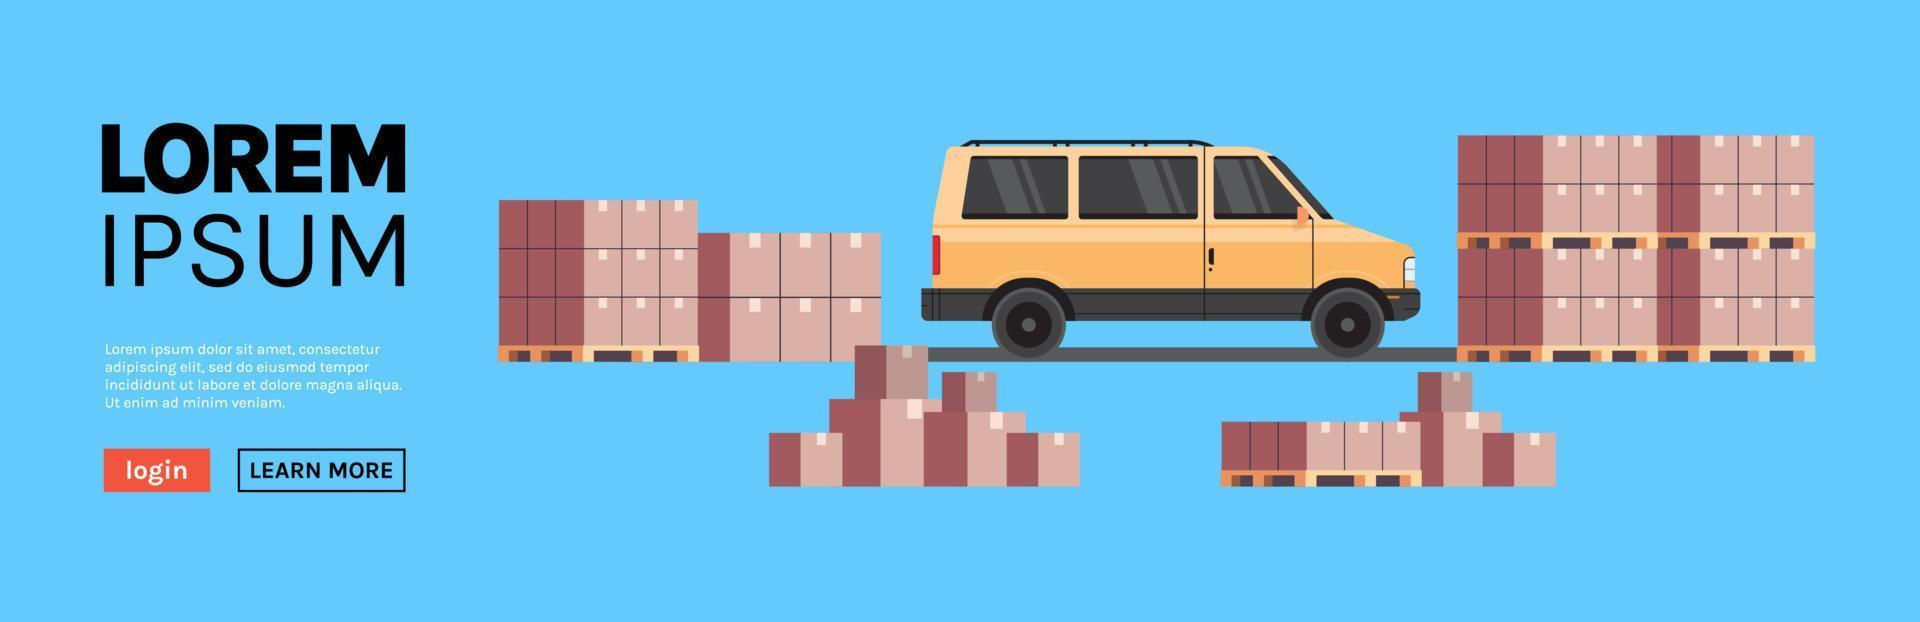 entrepôt cargo minibus chargement colis colis et livraison internationale concept industriel illustration vectorielle plane. vecteur